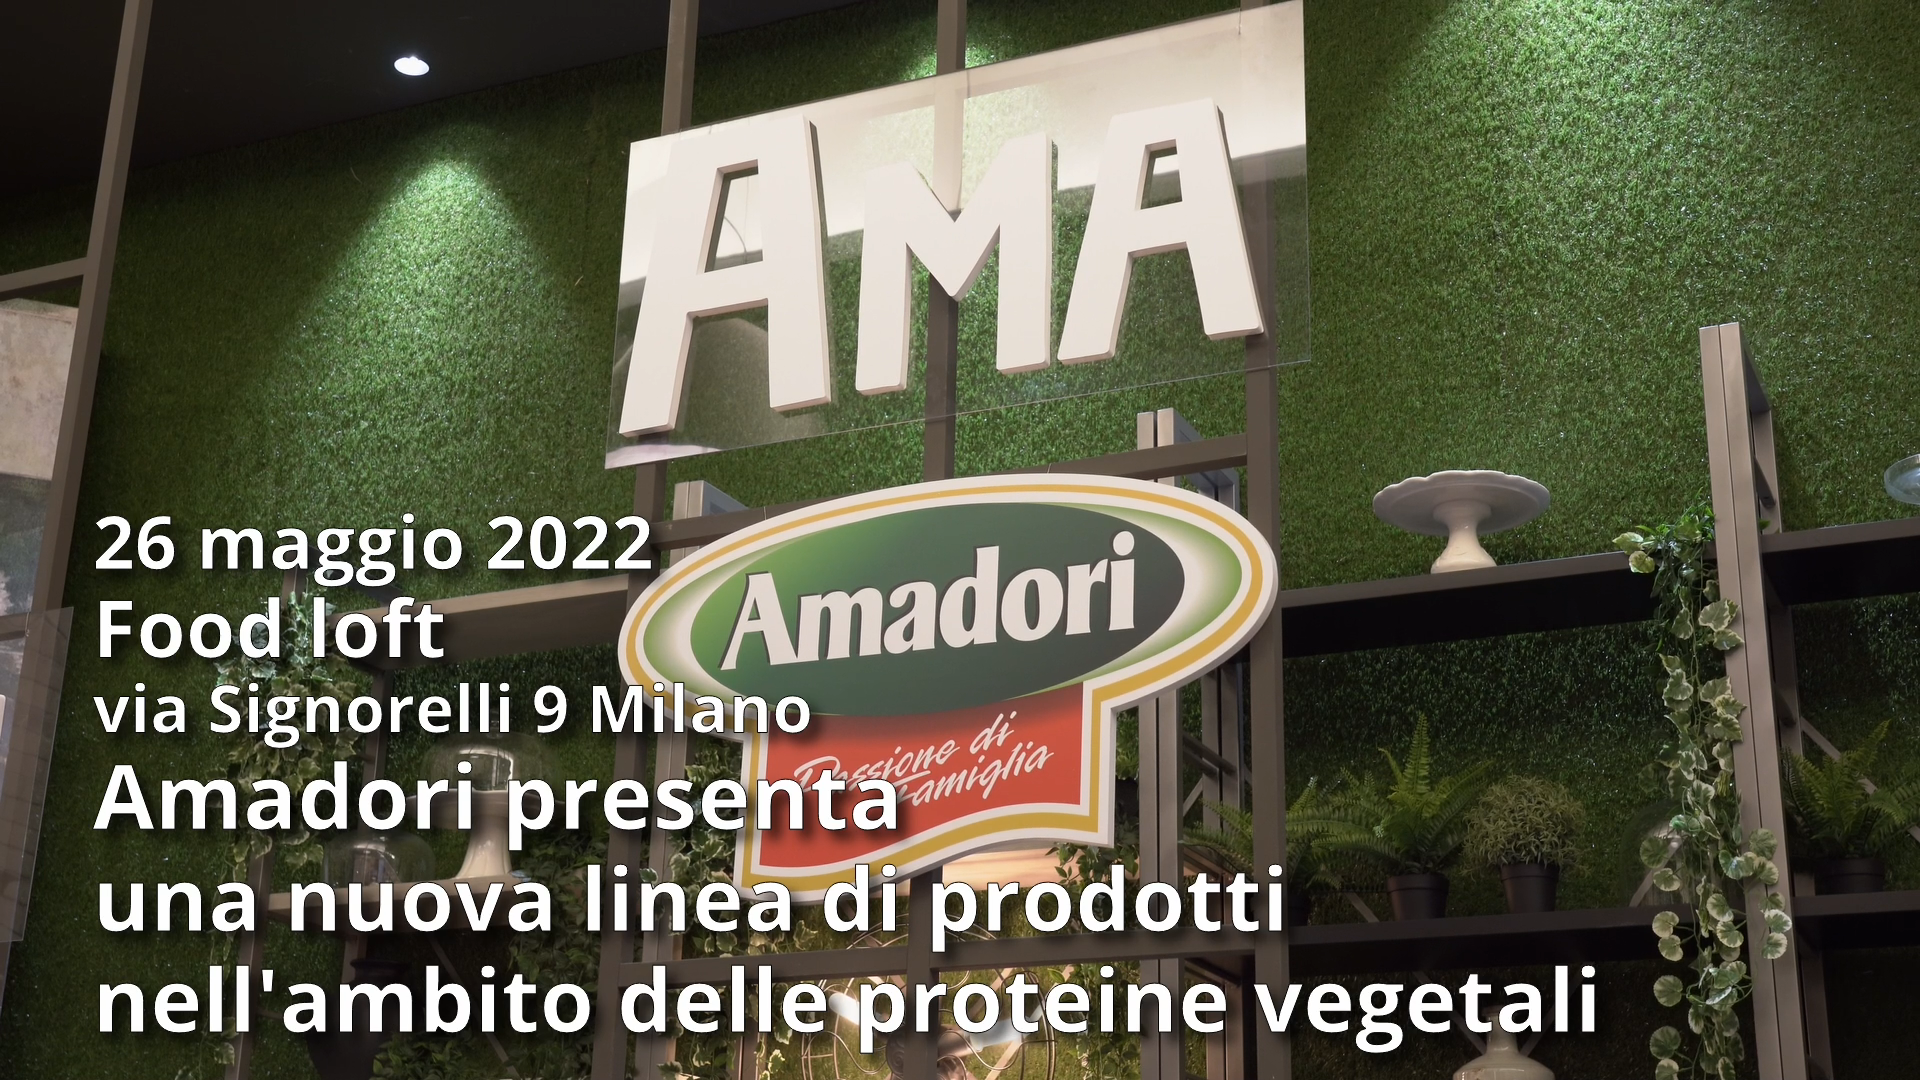 Food Loft – Milano: Amadori presenta una nuova linea di prodotti nell’ambito delle proteine vegetali